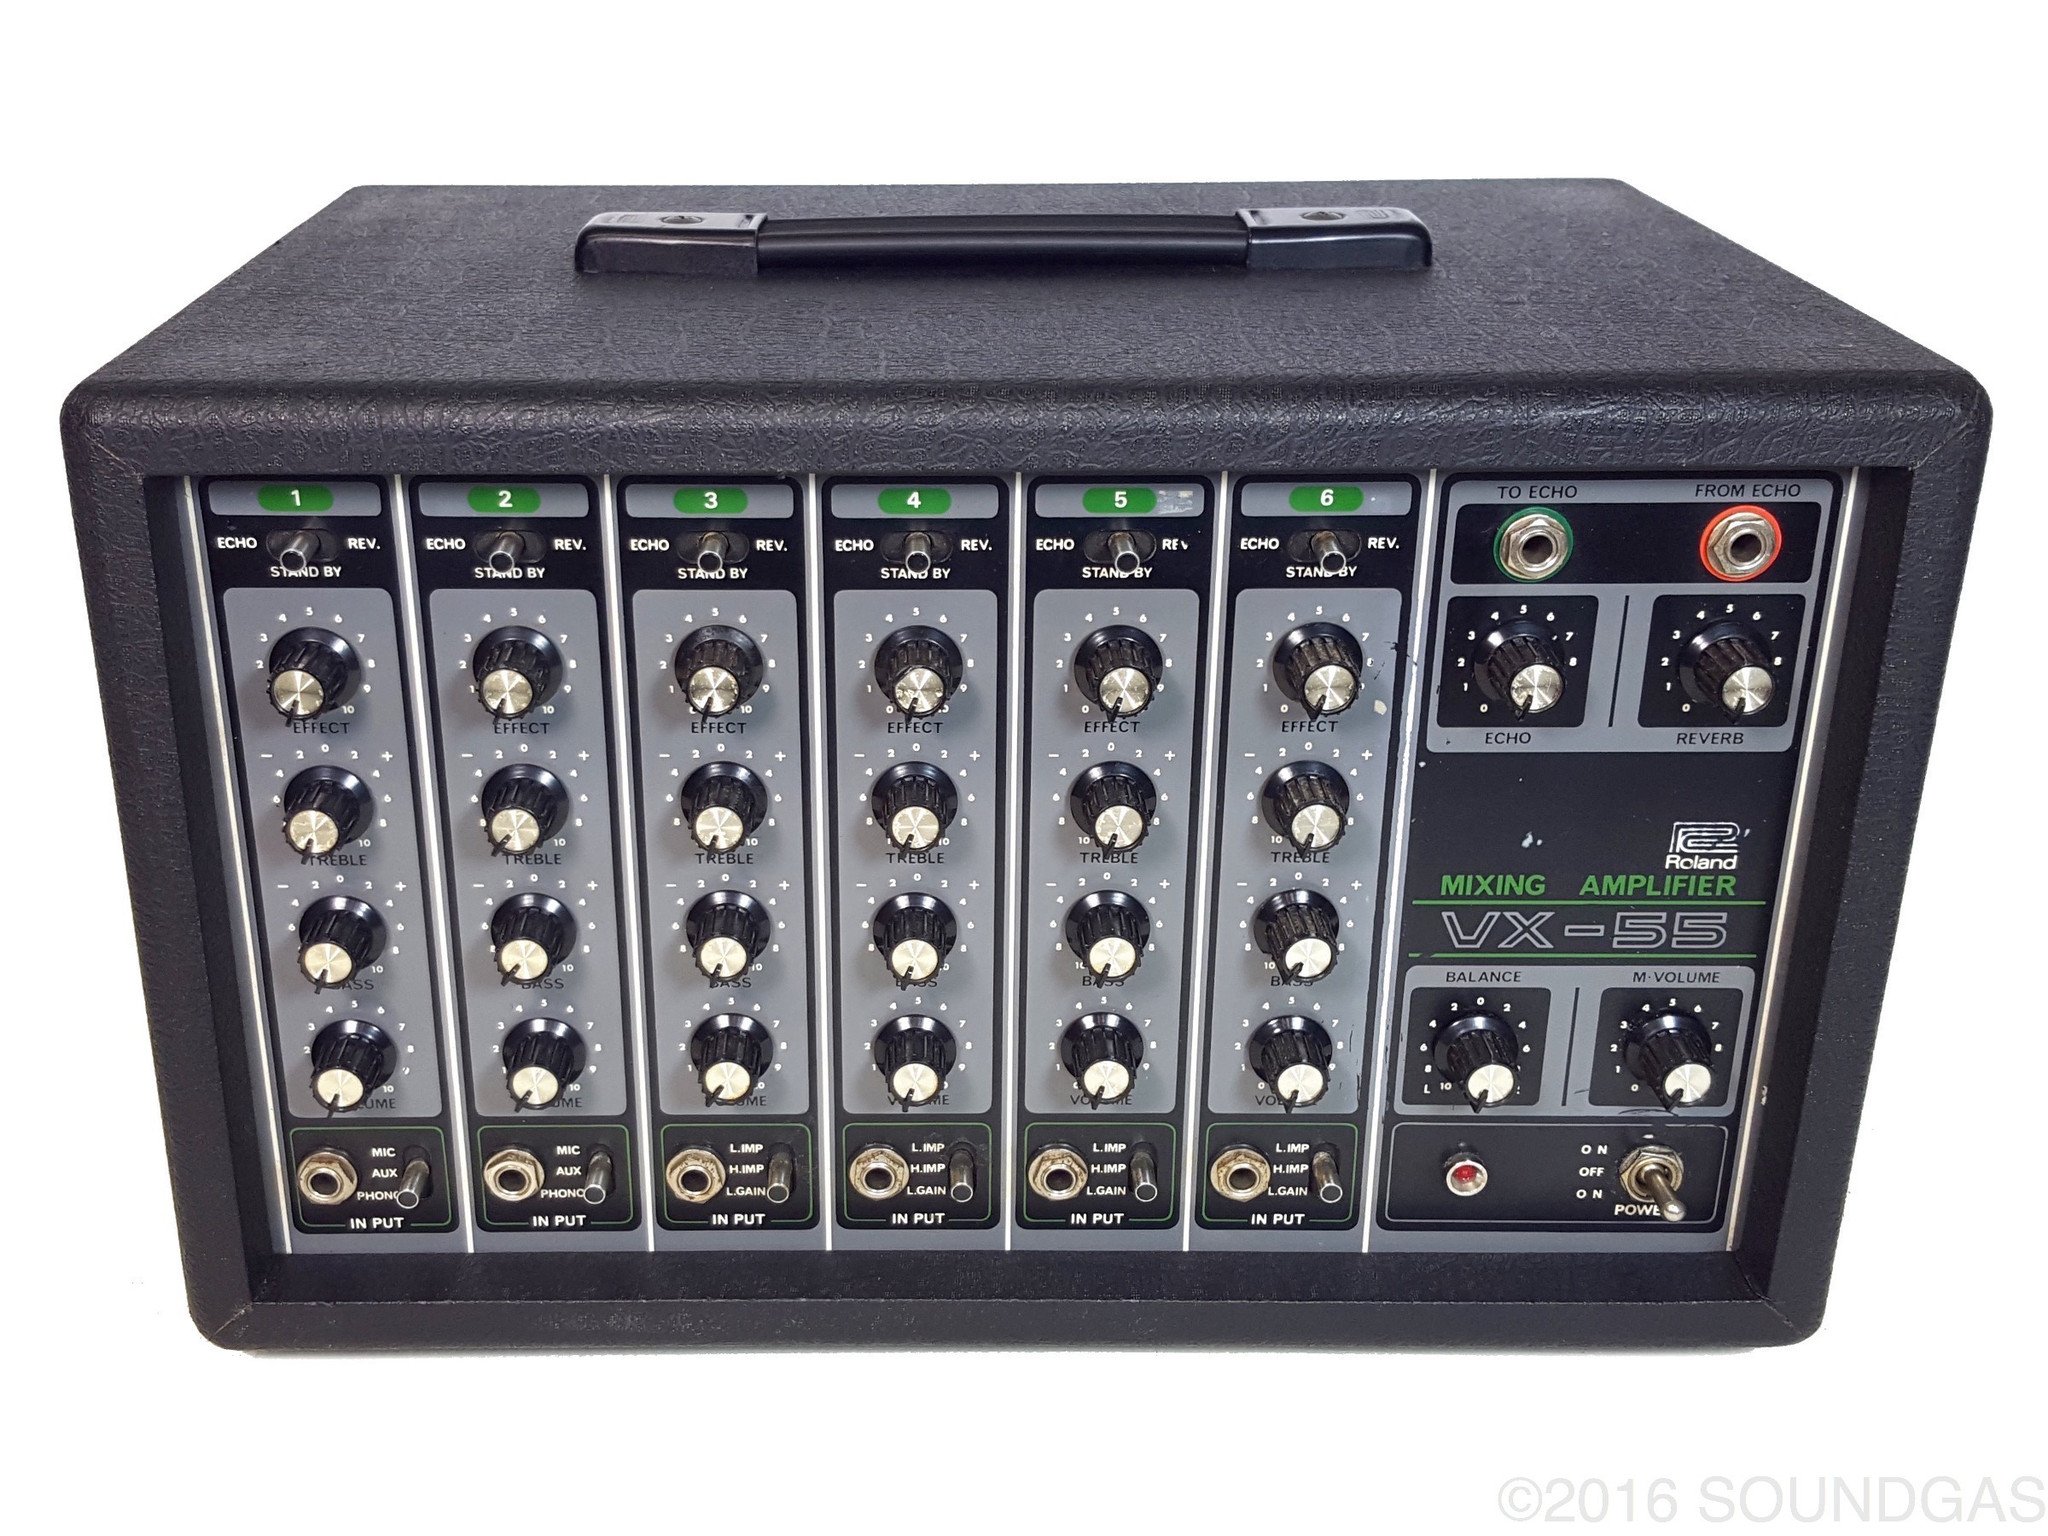 Roland-VX-55-Mixing-Amplifier-Cover-2_9b1d83f4-f935-4629-9329-cab047d8631e